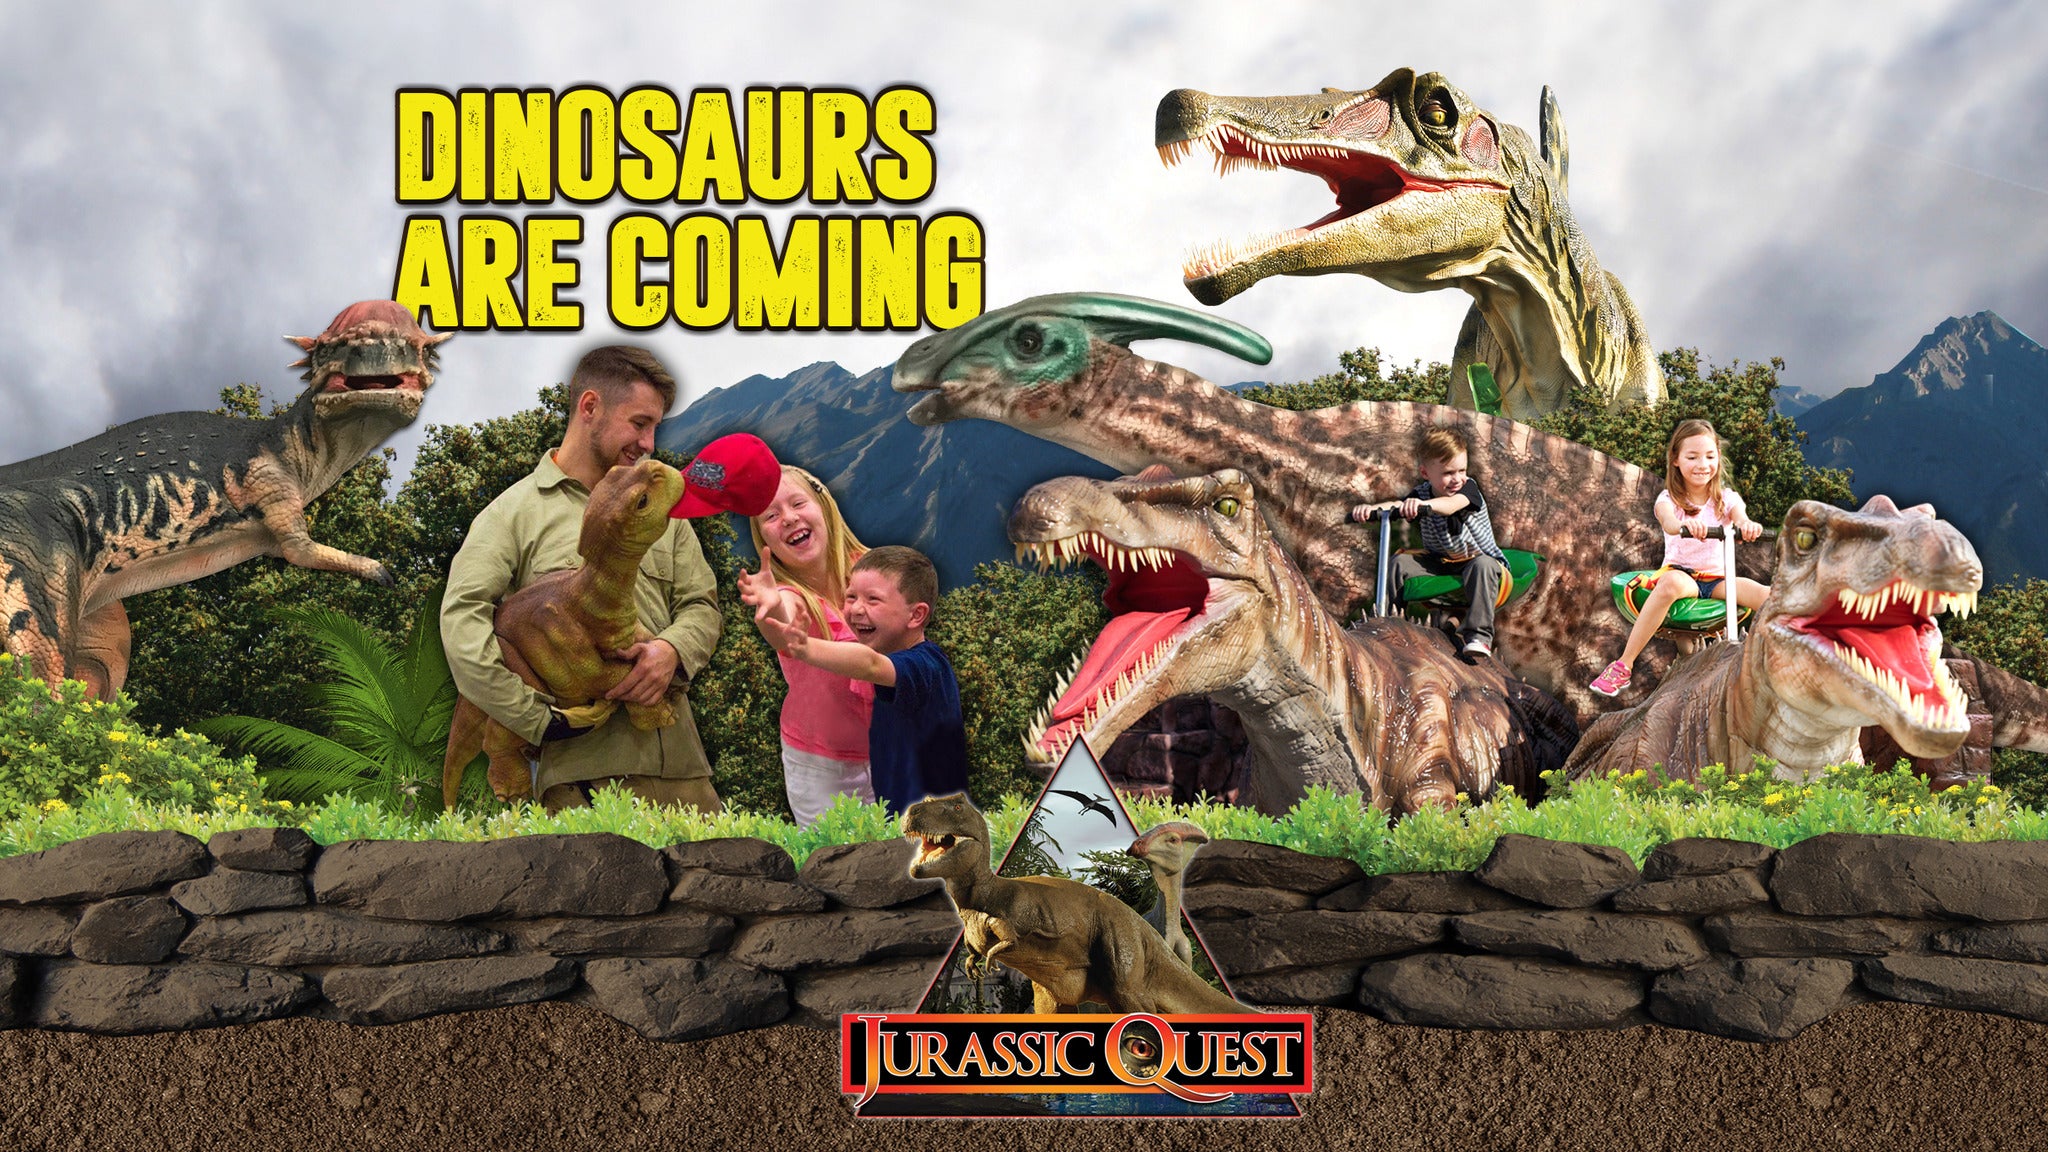 Jurassic Quest Tickets Event Dates & Schedule